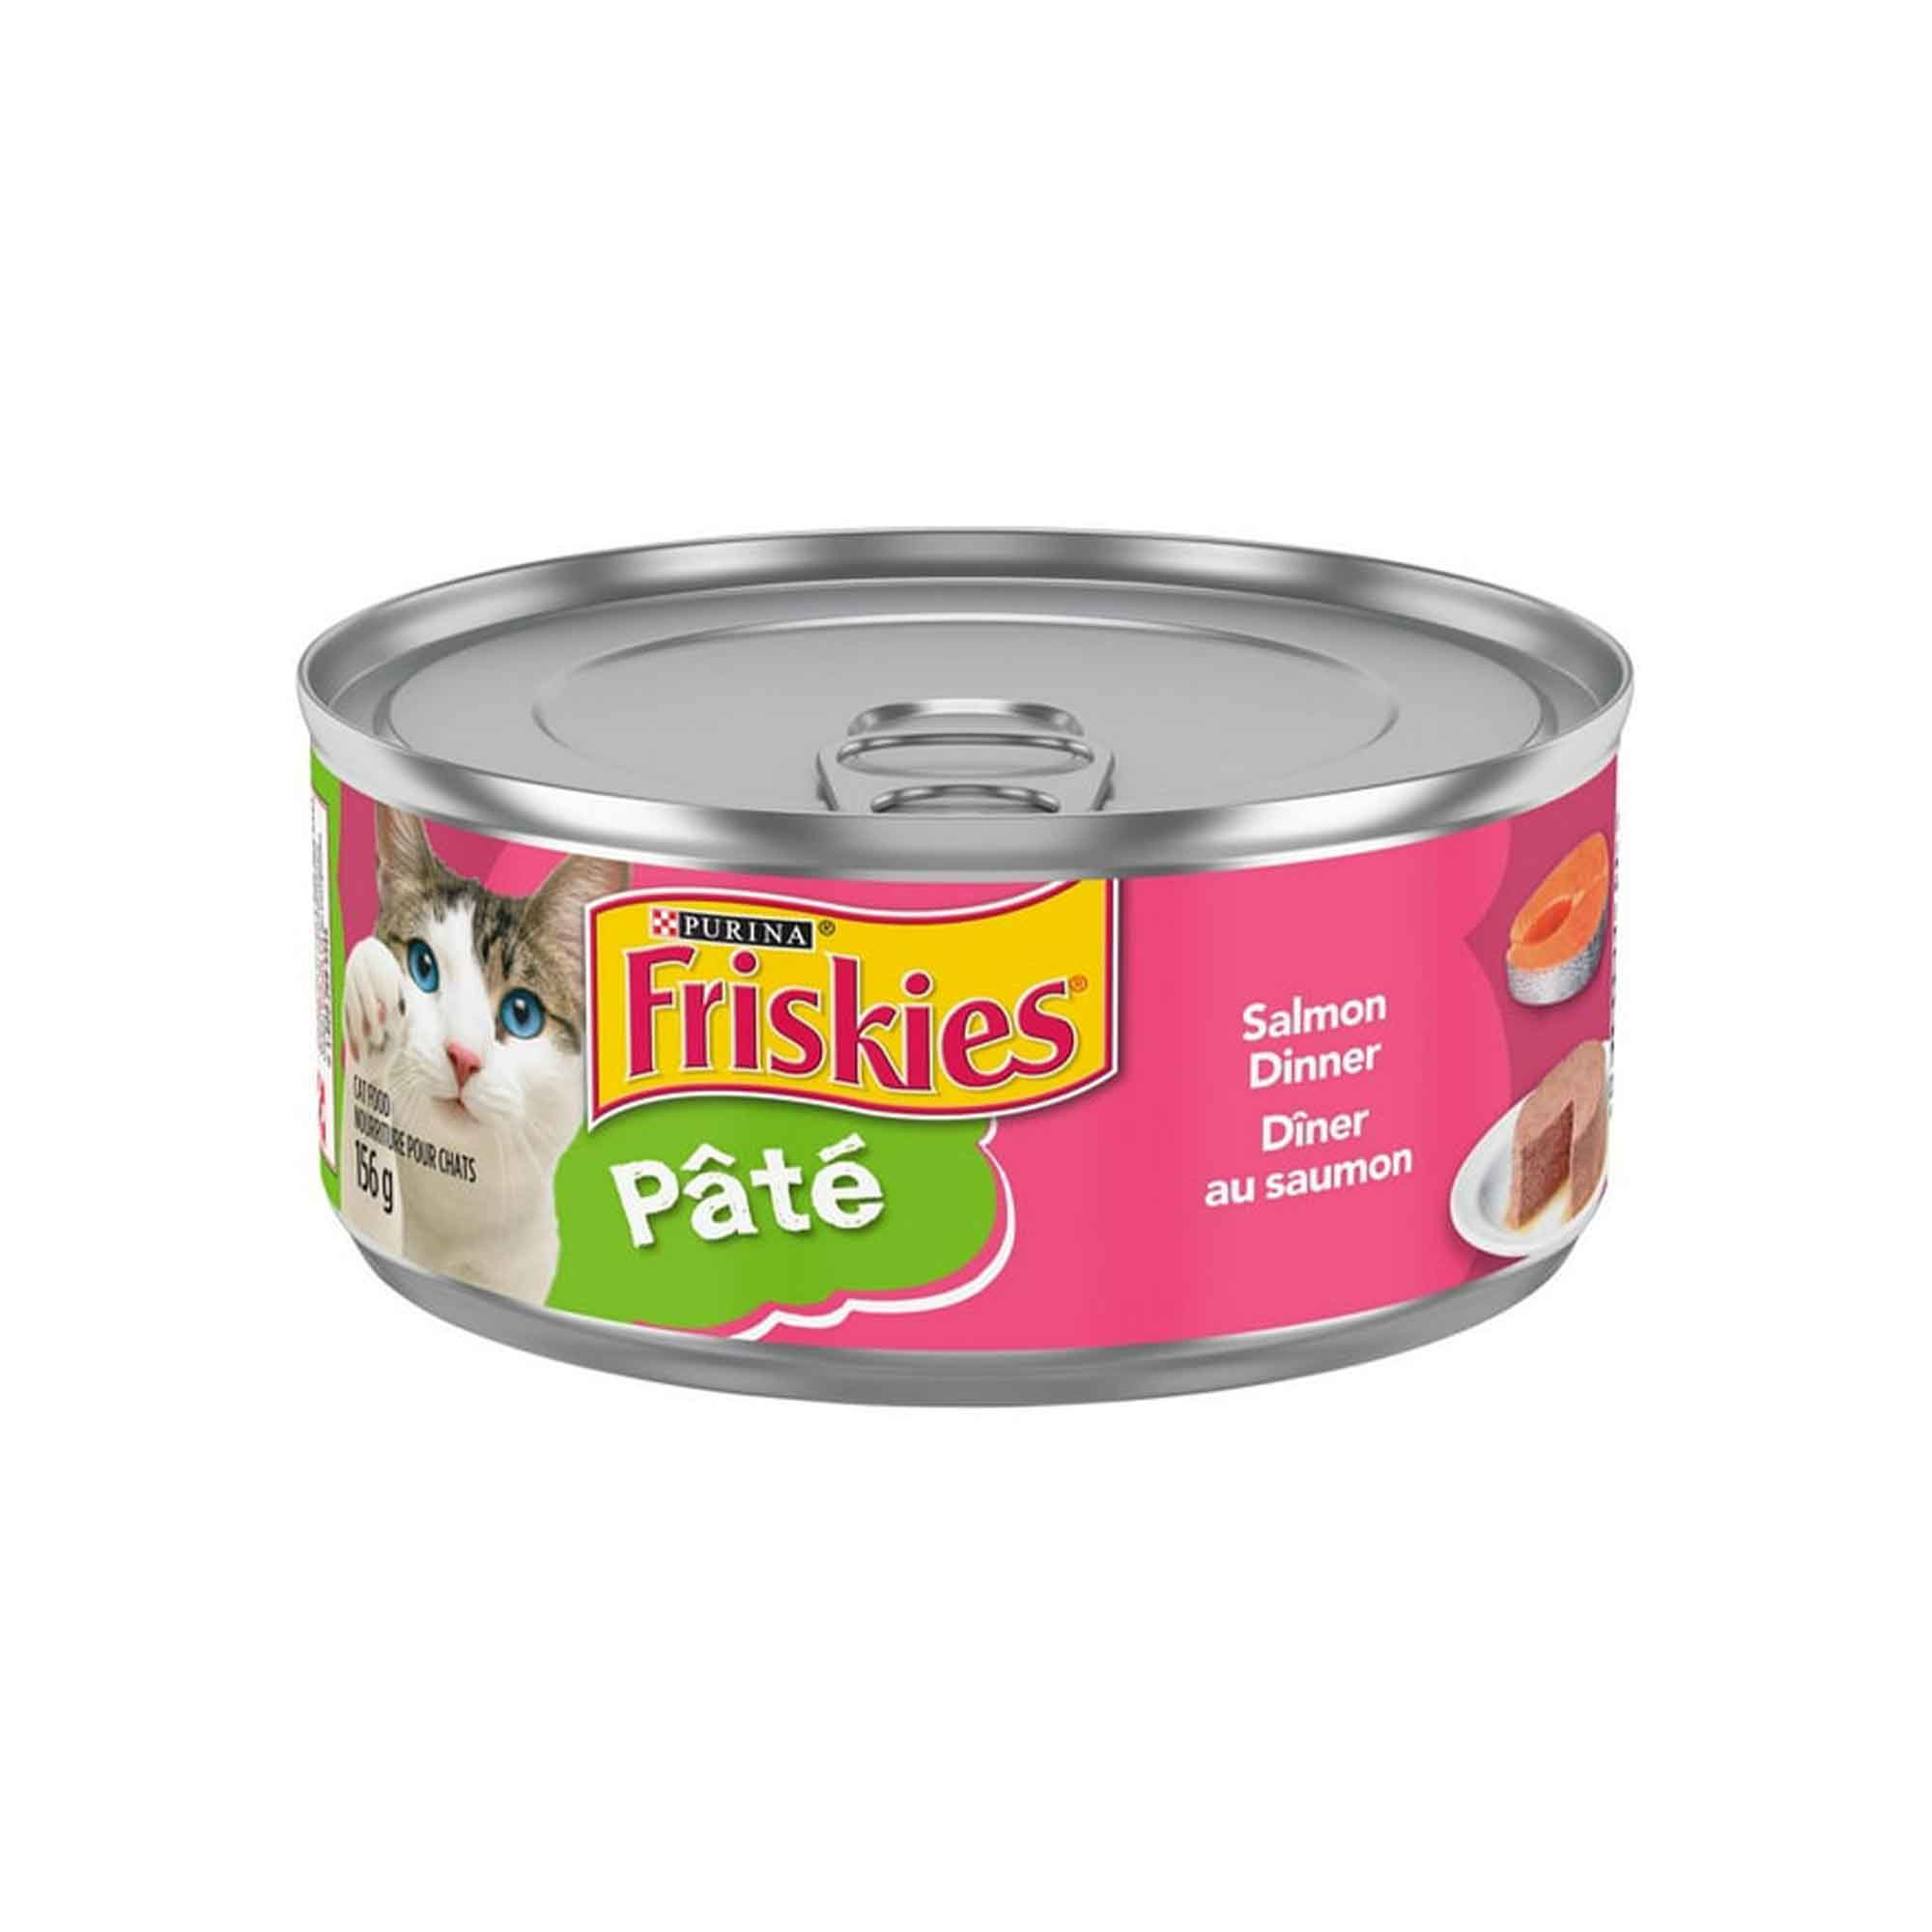 Friskies® Pâté Dîner Au Saumon, Nourriture humide pour chats - 156g